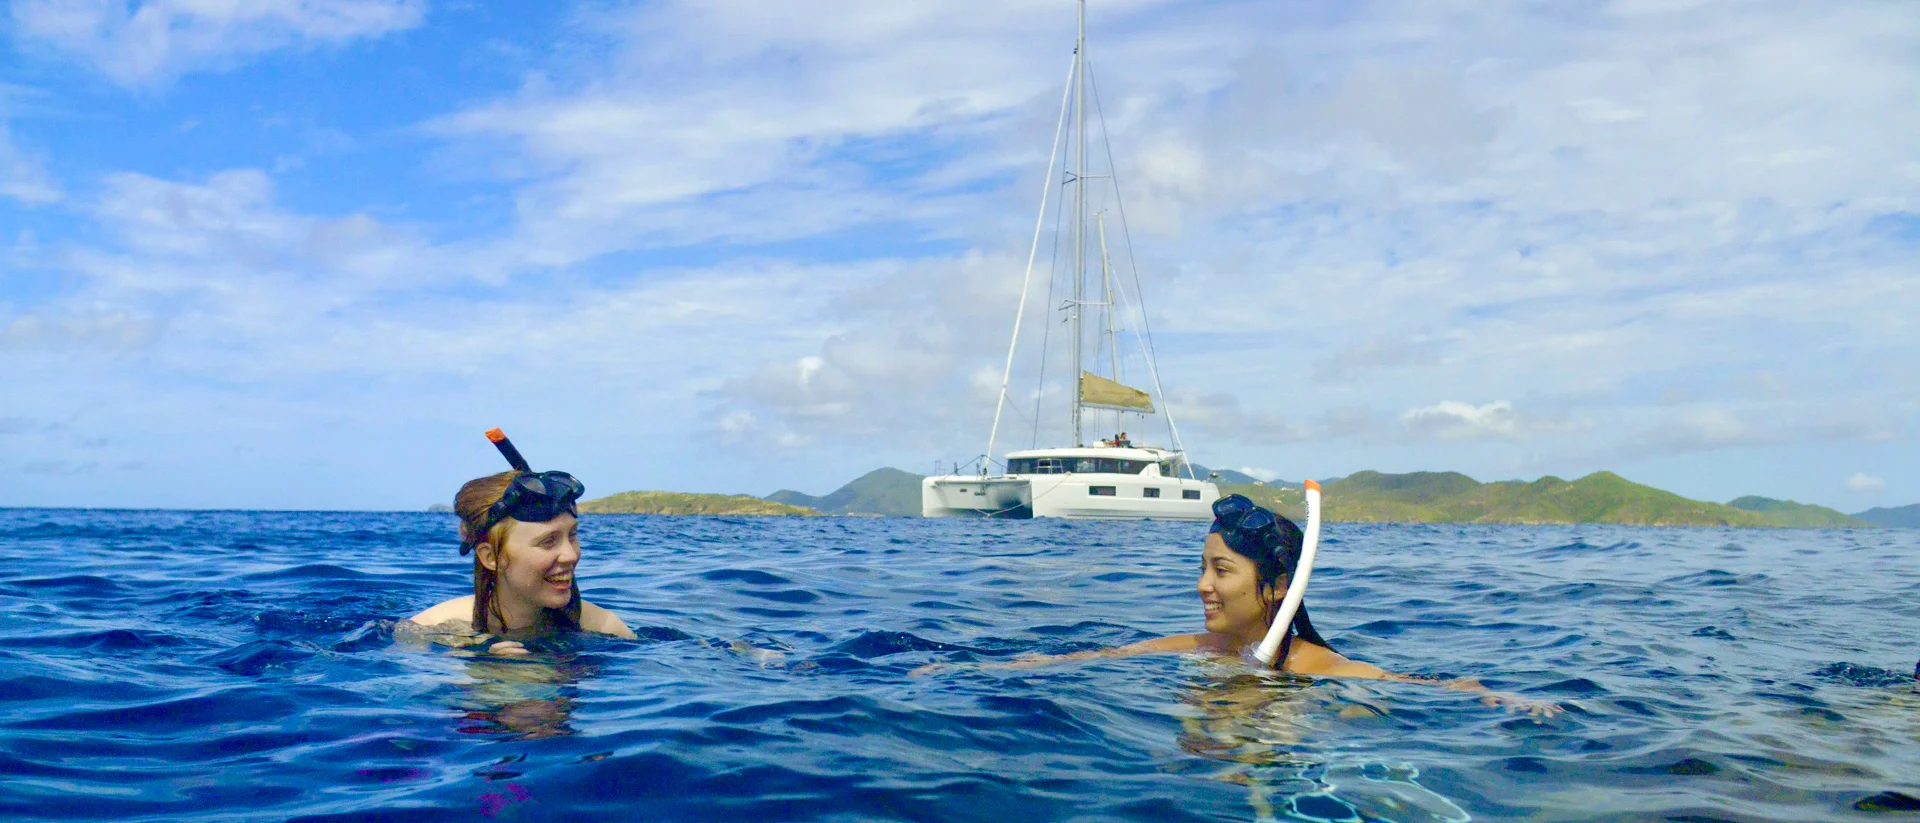 Divertenti immersioni durante le vacanze in barca a vela alle British Virgin Islands